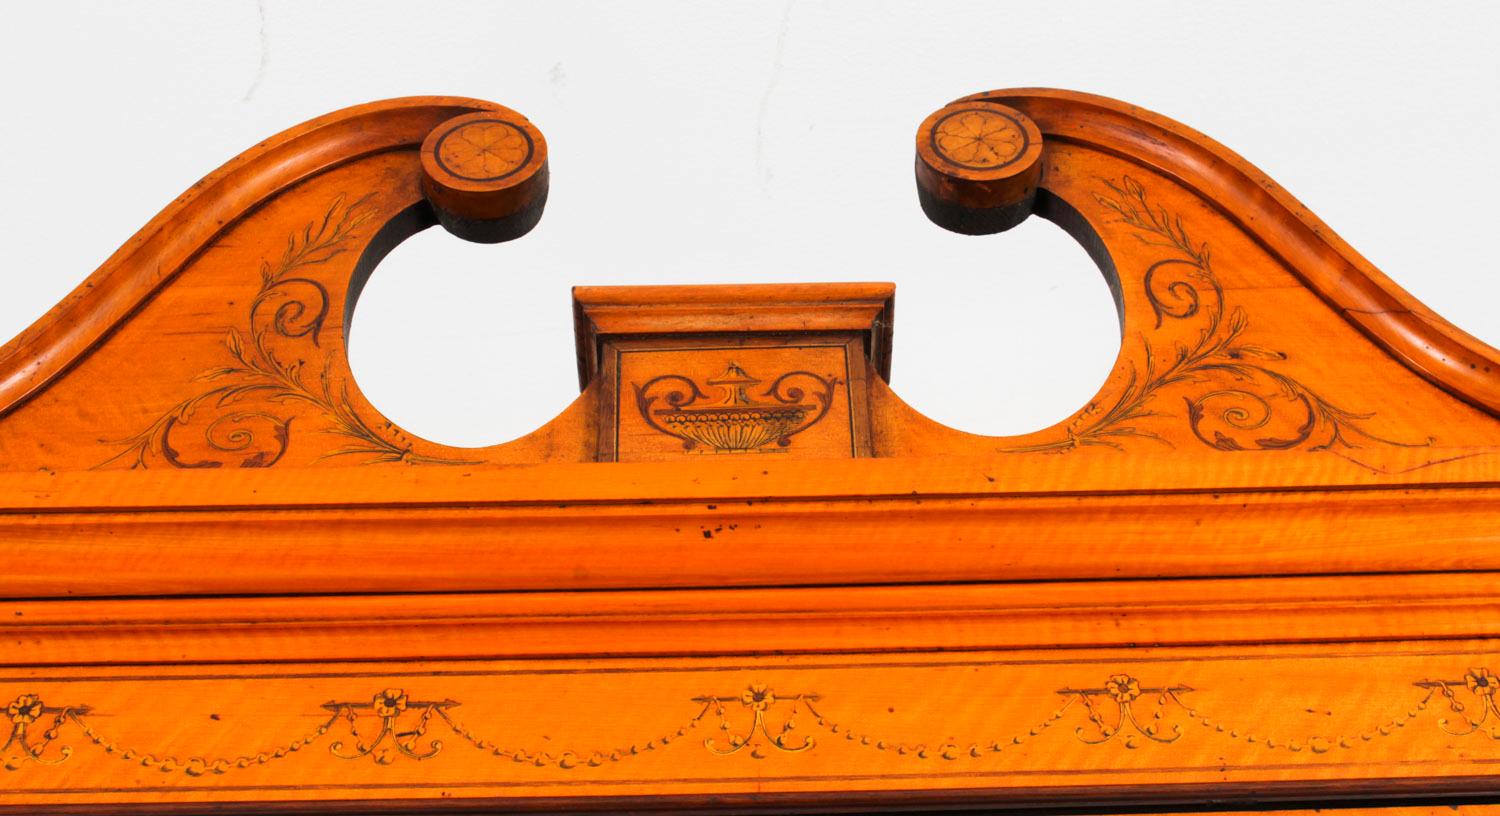 Dies ist eine schöne antike Sheraton Revival Top-Qualität drei Türen breakfront Bücherregal, meisterhaft in reicher Satinholz von den renommierten Möbelschreiner und Einzelhändler Edwards & Roberts, Circa 1880 in Datum gefertigt.

Dieses prächtige